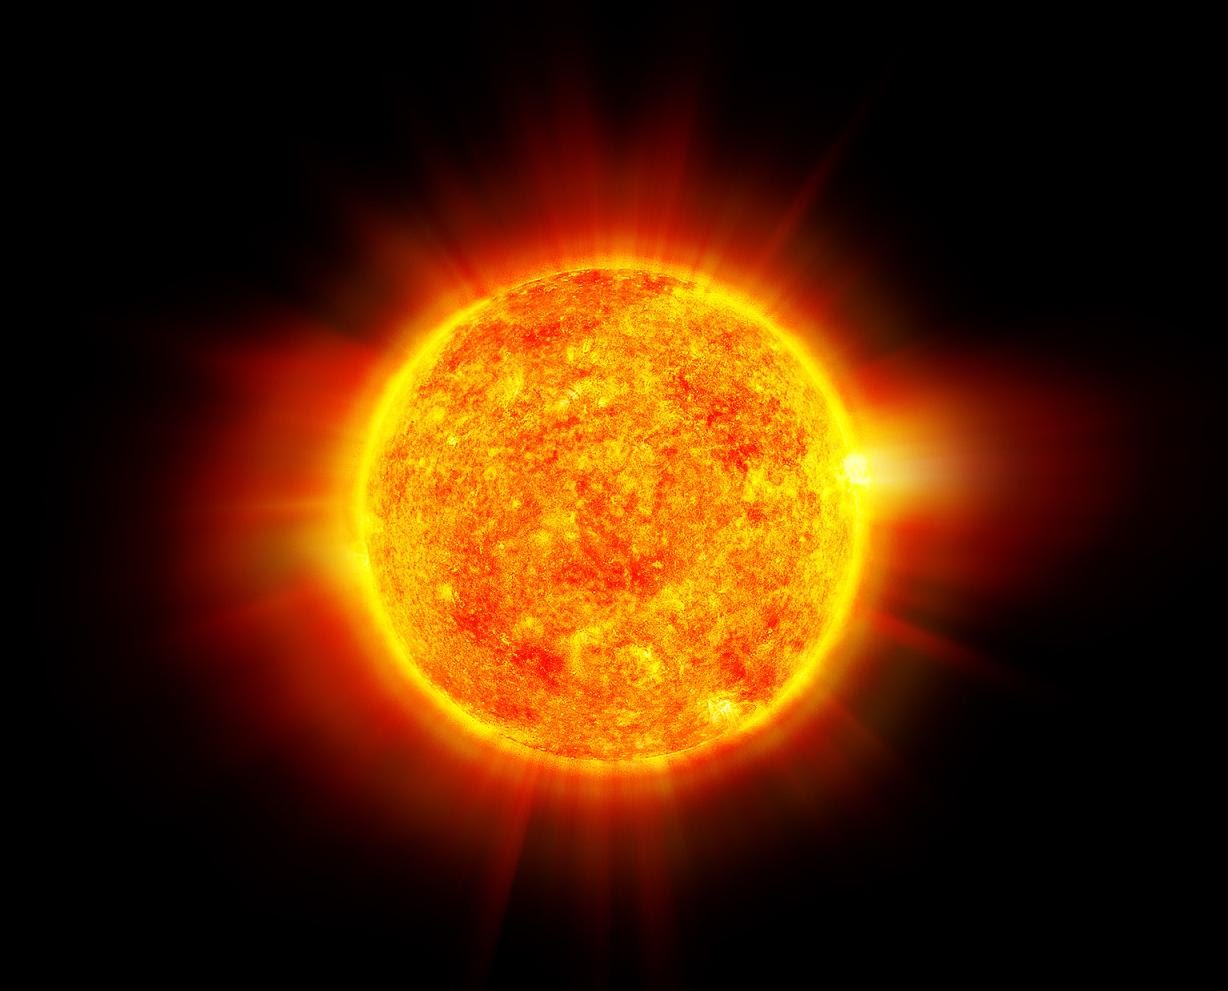 НАСА опубликовало потрясающее видео в высочайшем качестве, показывающее деятельность Солнца